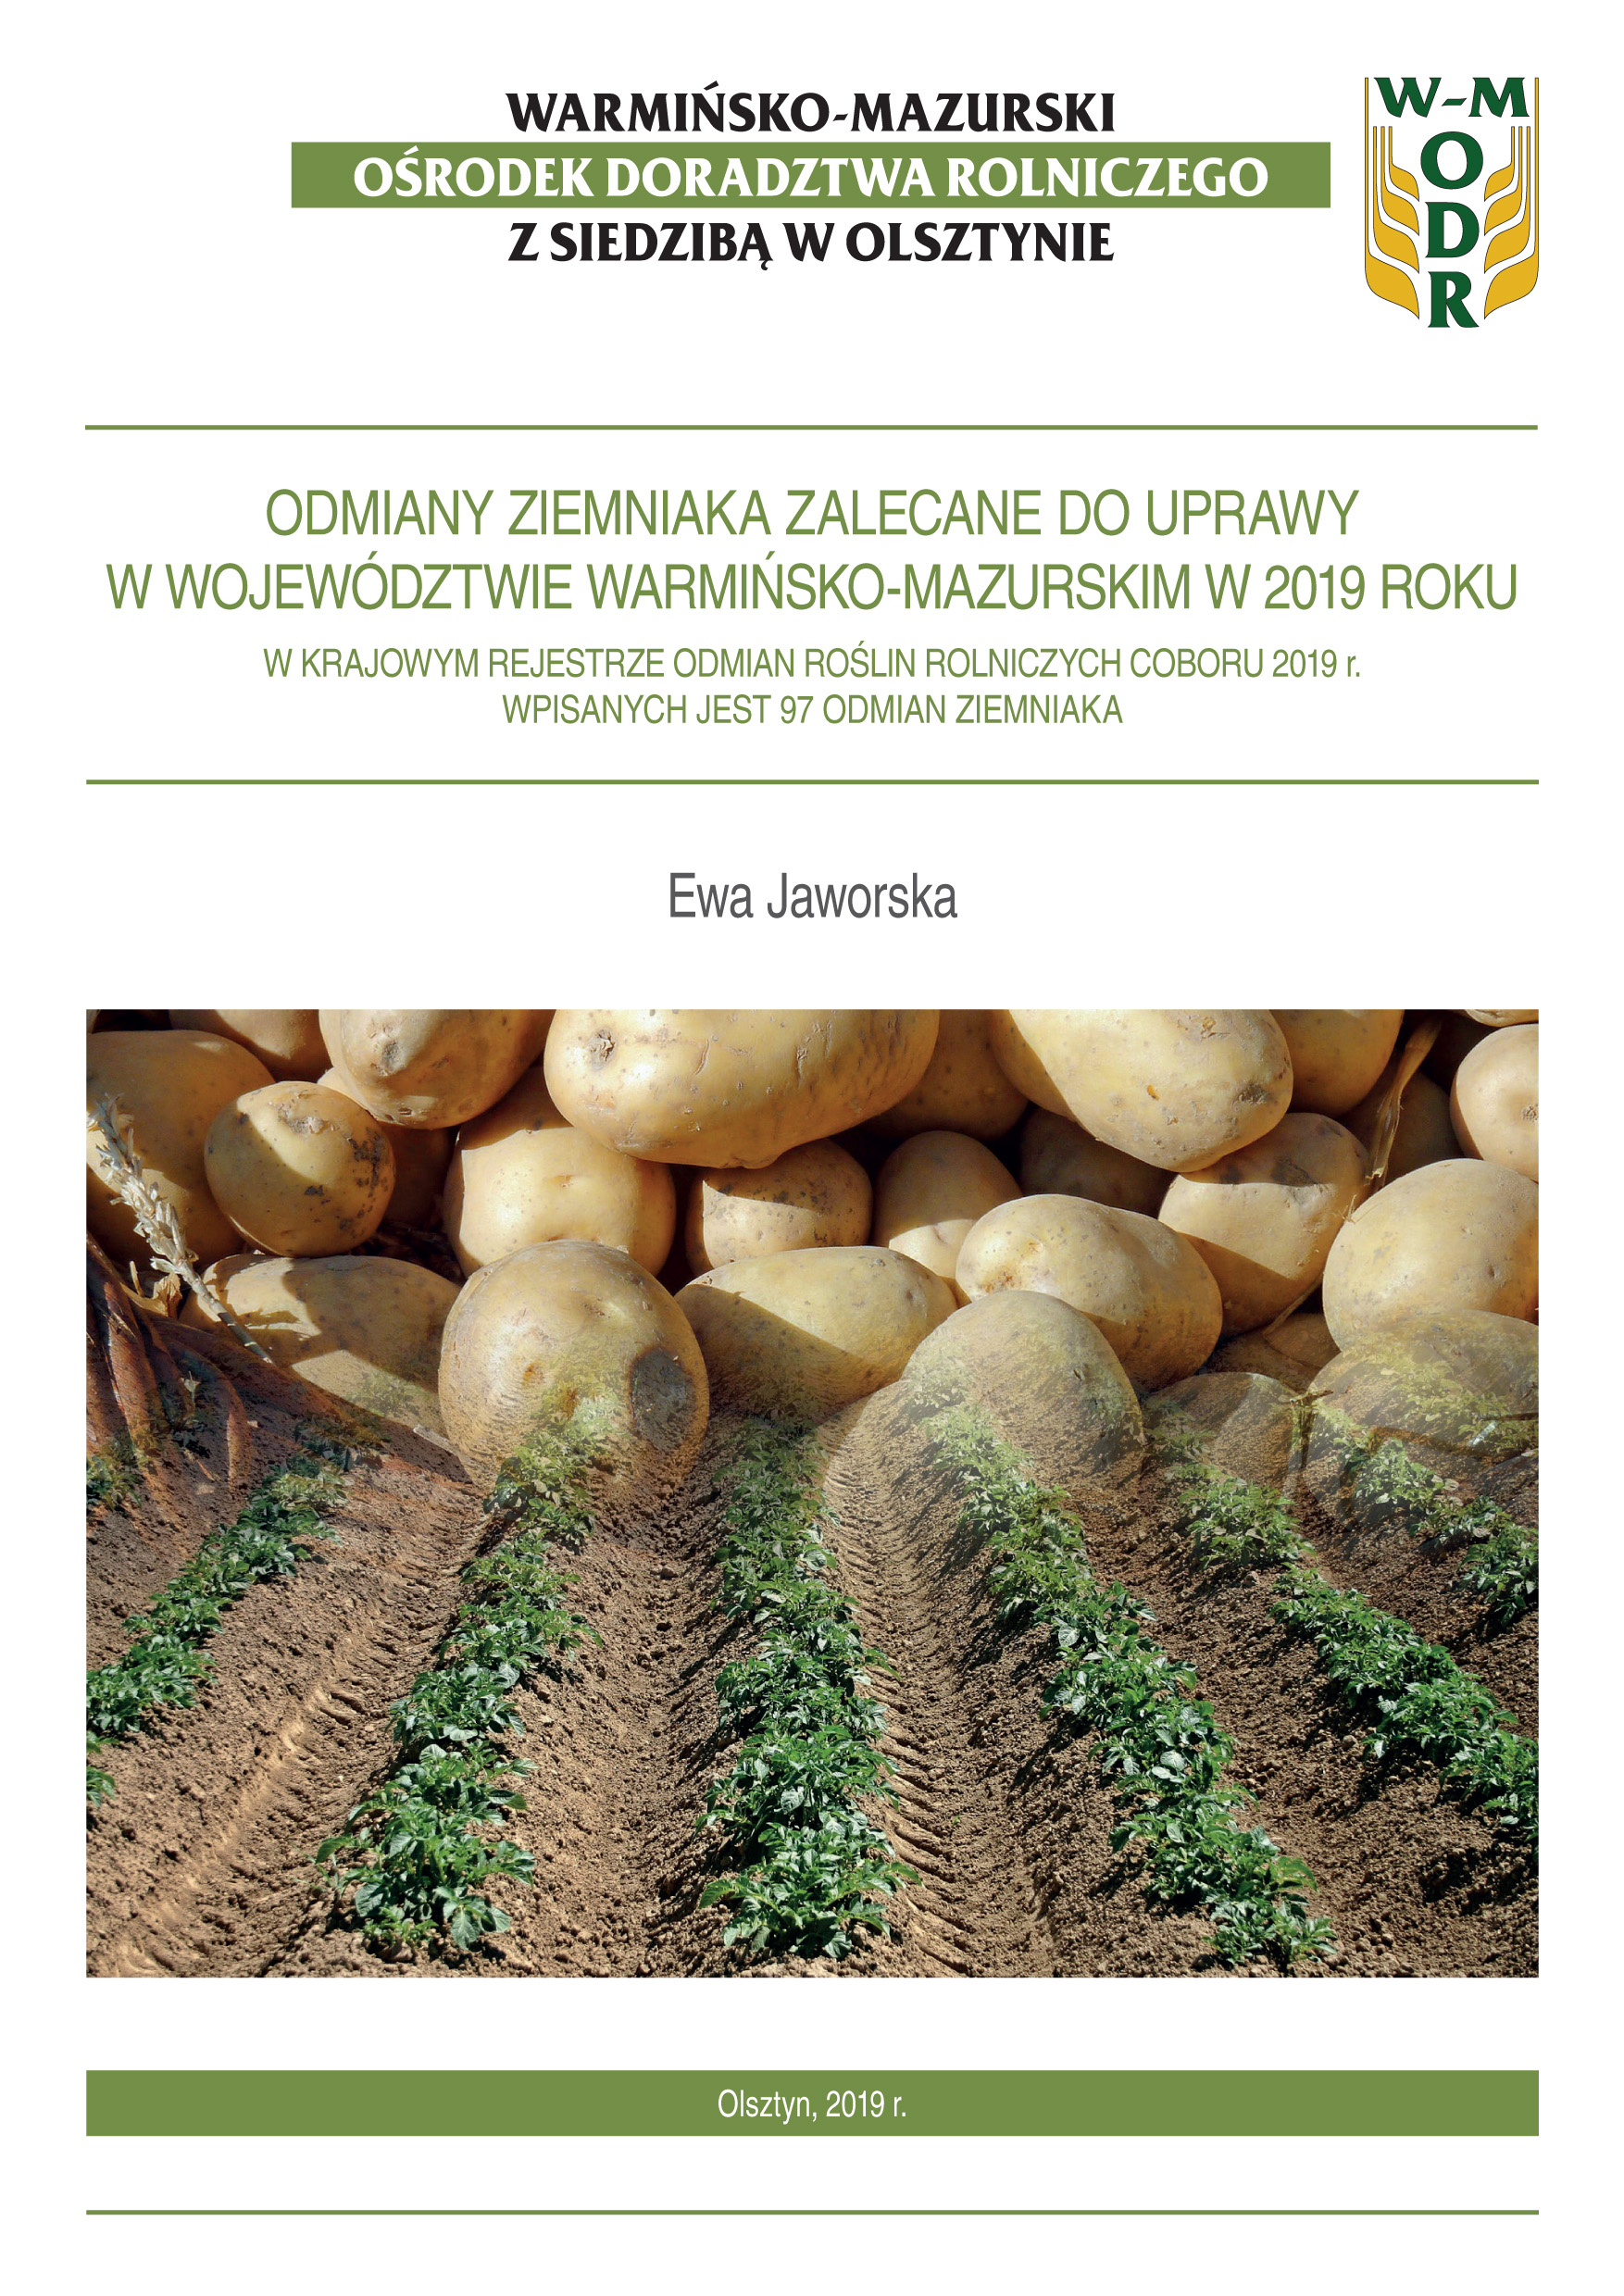 Odmiany ziemniaka zalecane do uprawy w województwie warmińsko-mazurskim w 2019 roku